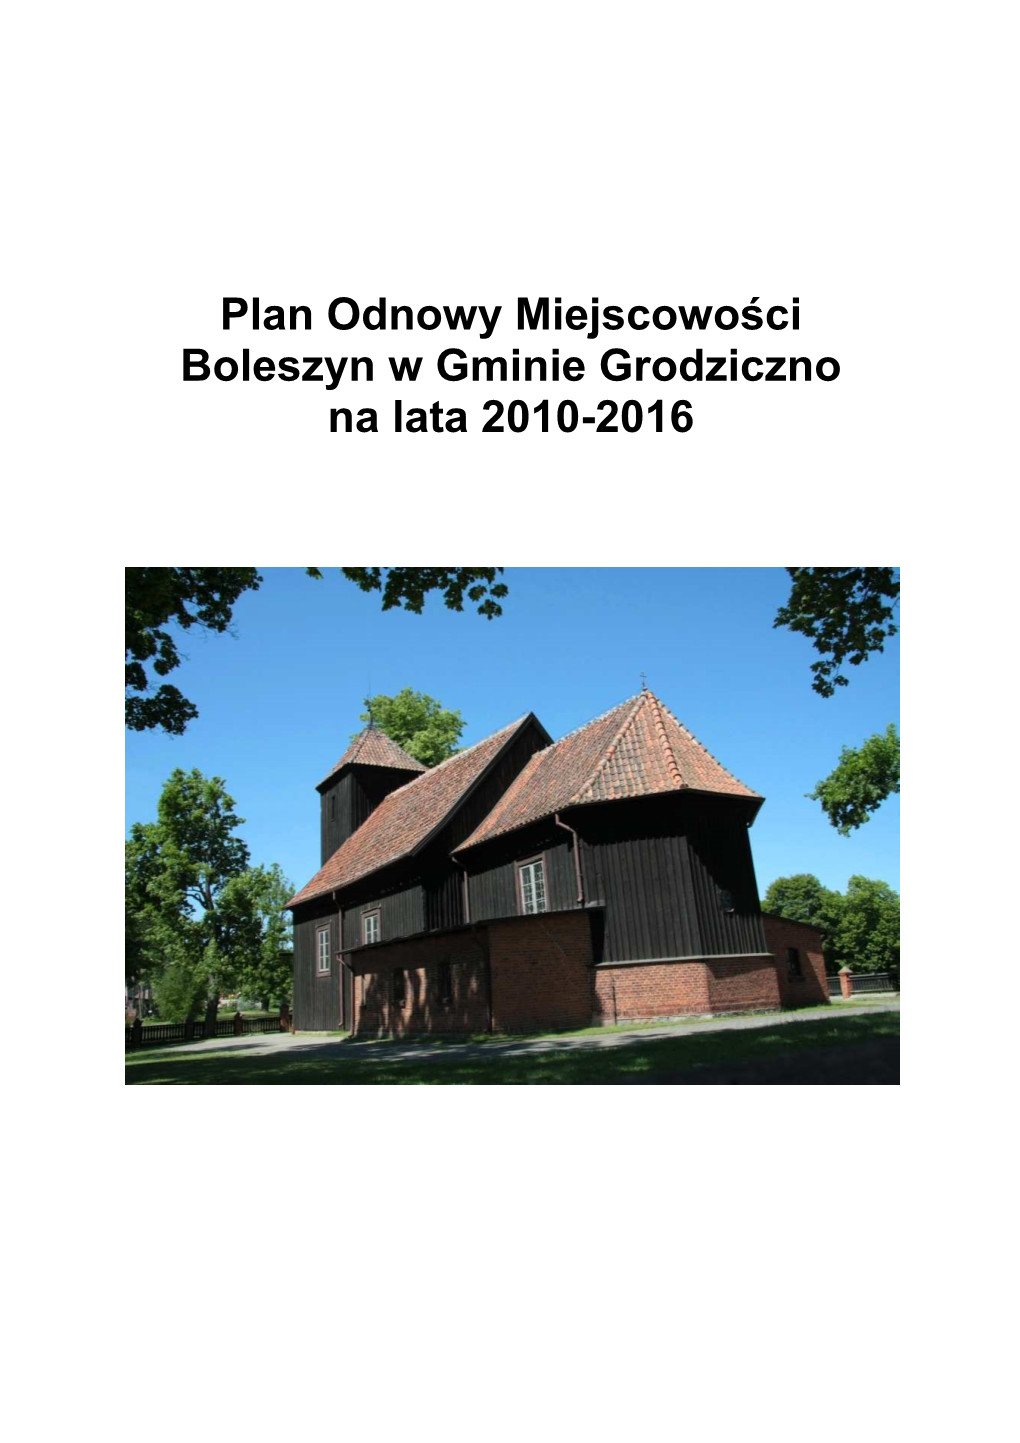 Plan Odnowy Miejscowości Boleszyn W Gminie Grodziczno Na Lata 2010-2016